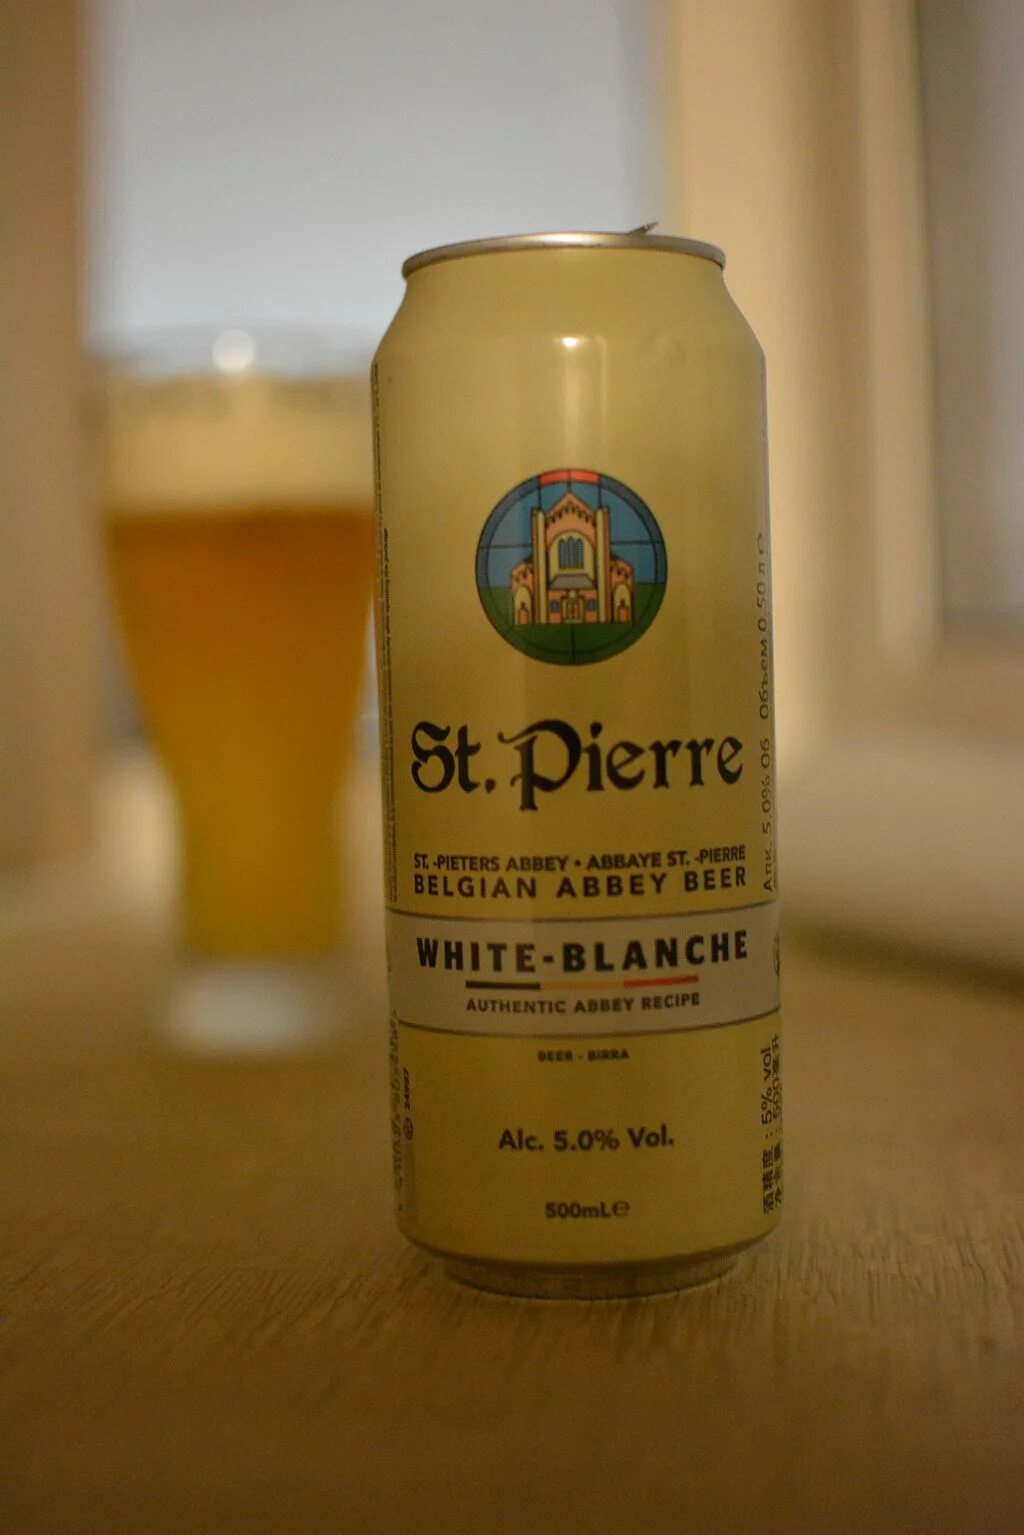 St pierre пиво. Saint Pierre пиво. St Pierre Blanche. Пиво Пьер Бланш. Пиво St Pierre blonde.